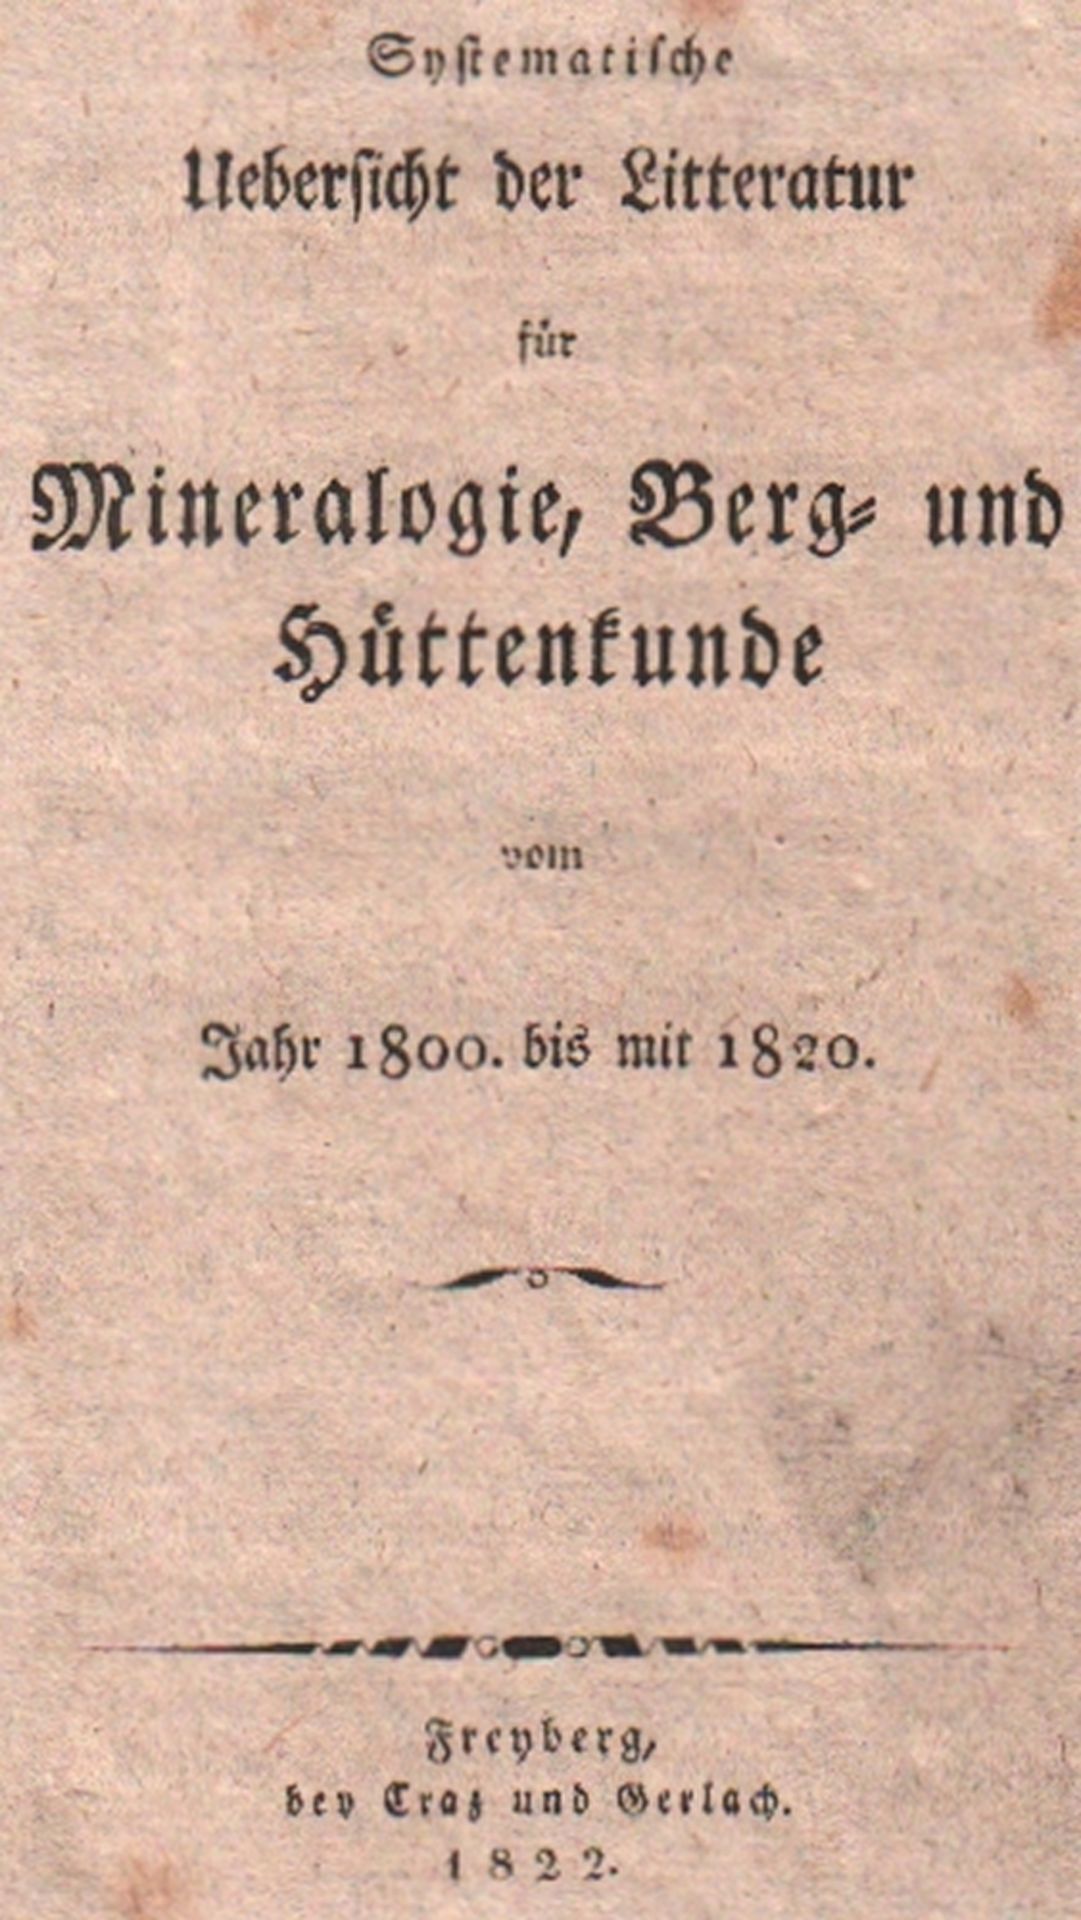 Bergbau. Bibliographie. Freiesleben, Johann Carl. Systematische Uebersicht der Litteratur von der